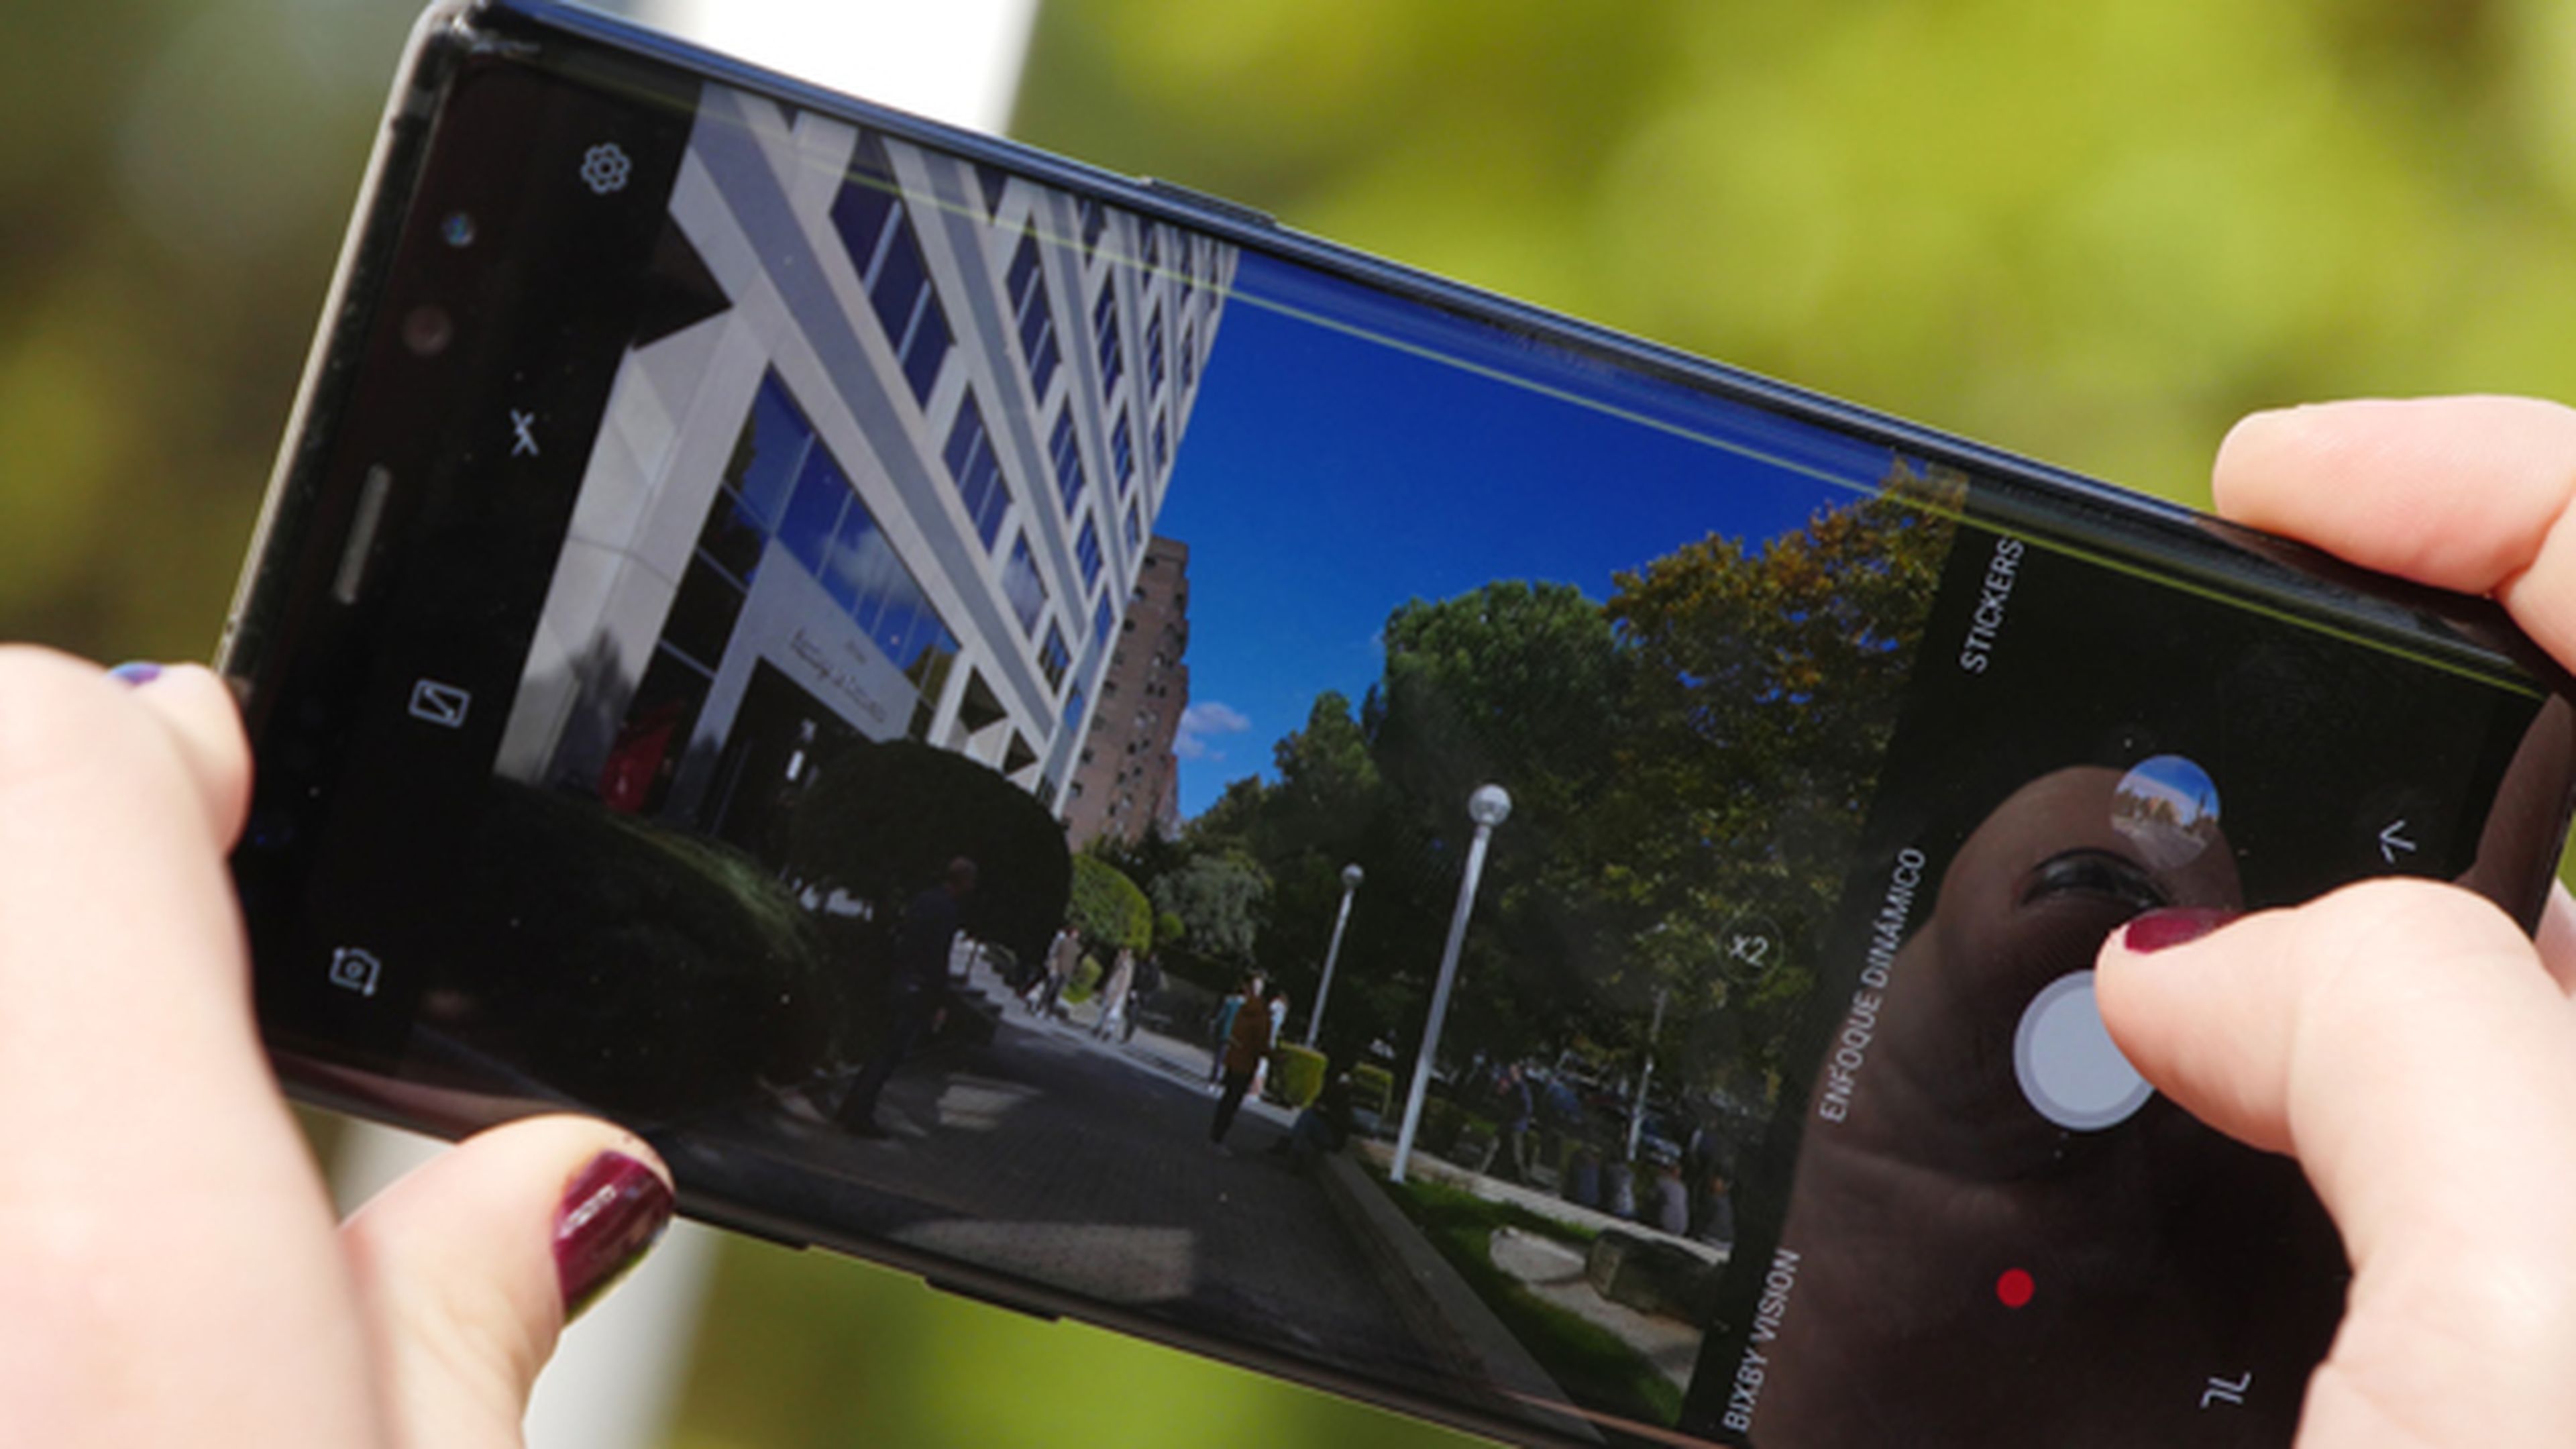 Comparativa de cámaras: opiniones sobre el Samsung Galaxy Note 8